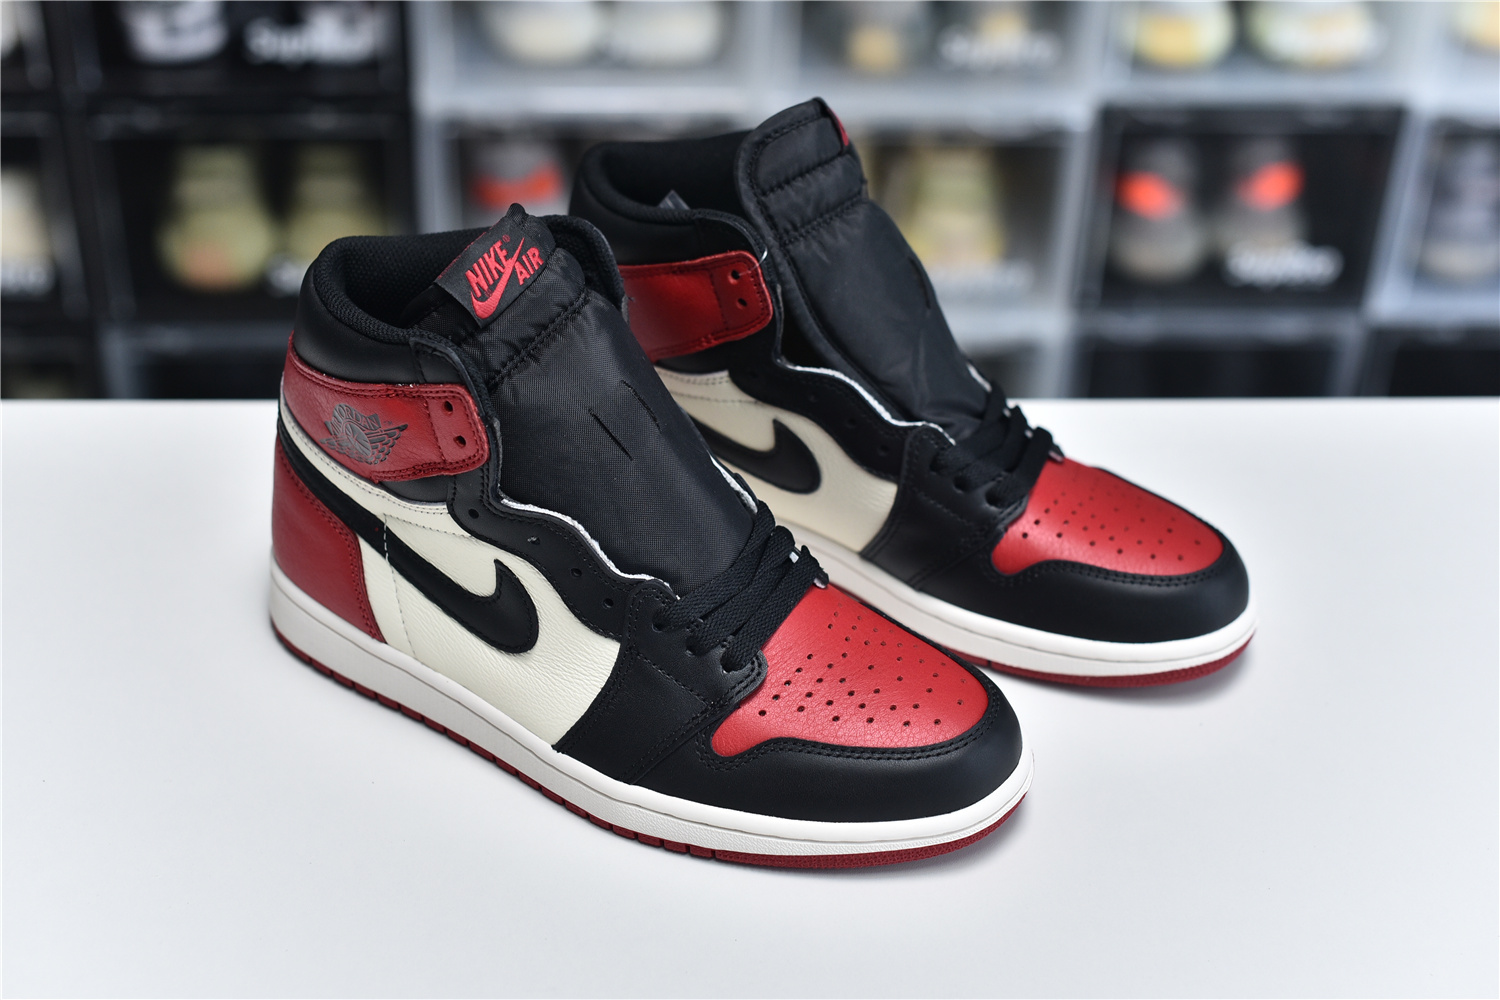 Nike Air Jordan 1 Retro High Og Red Black White Men Sneakers 555088 610 Kickbulk 9 - www.kickbulk.org